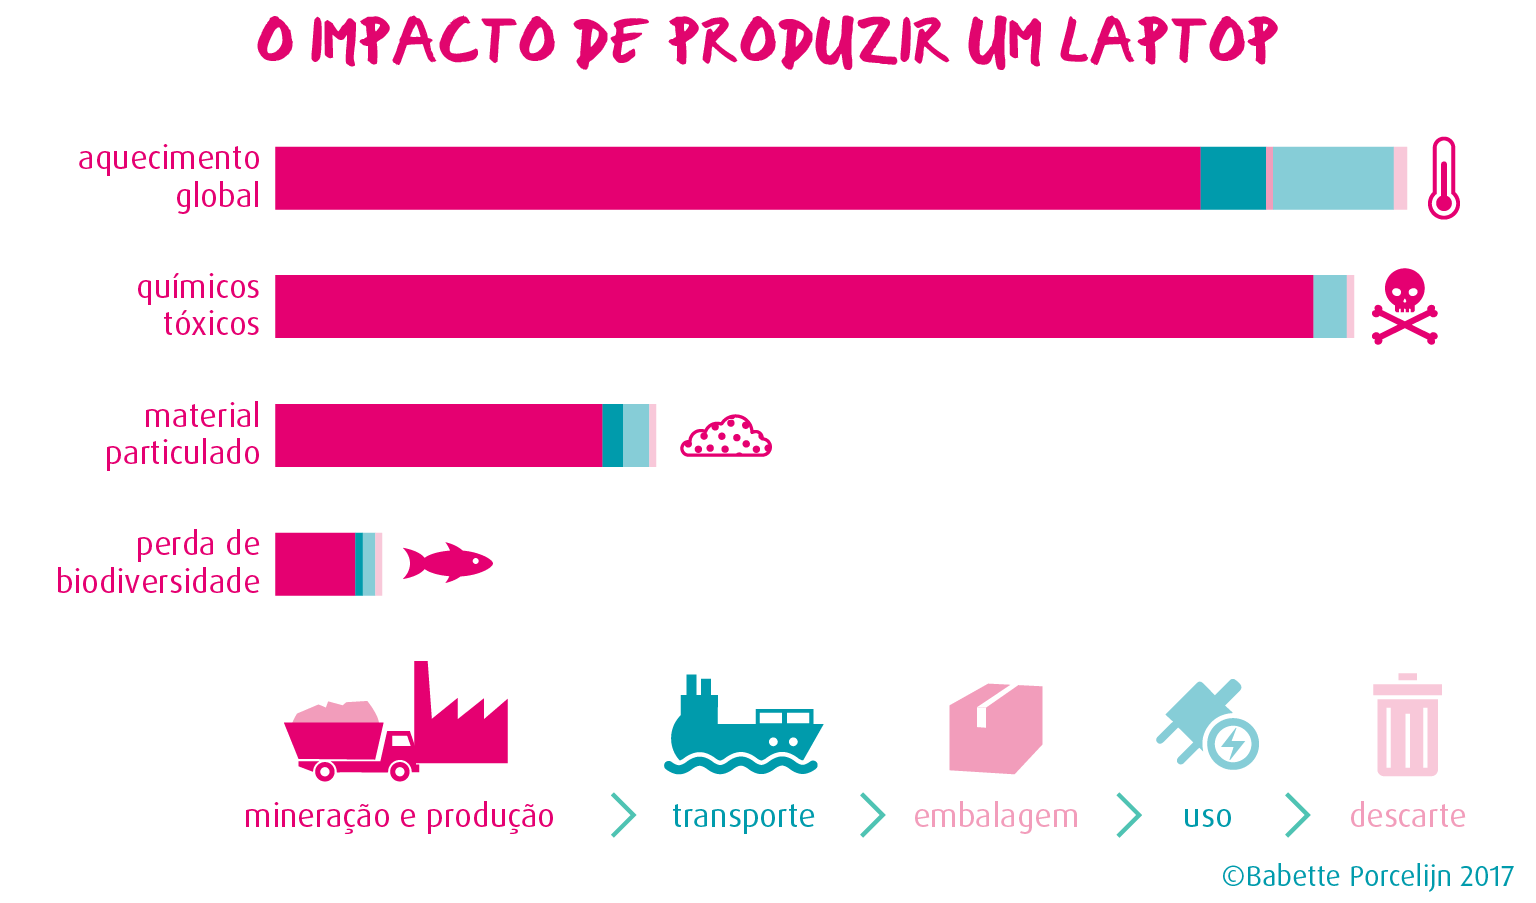 Gráfico sobre o impacto ambiental de produzir um laptop